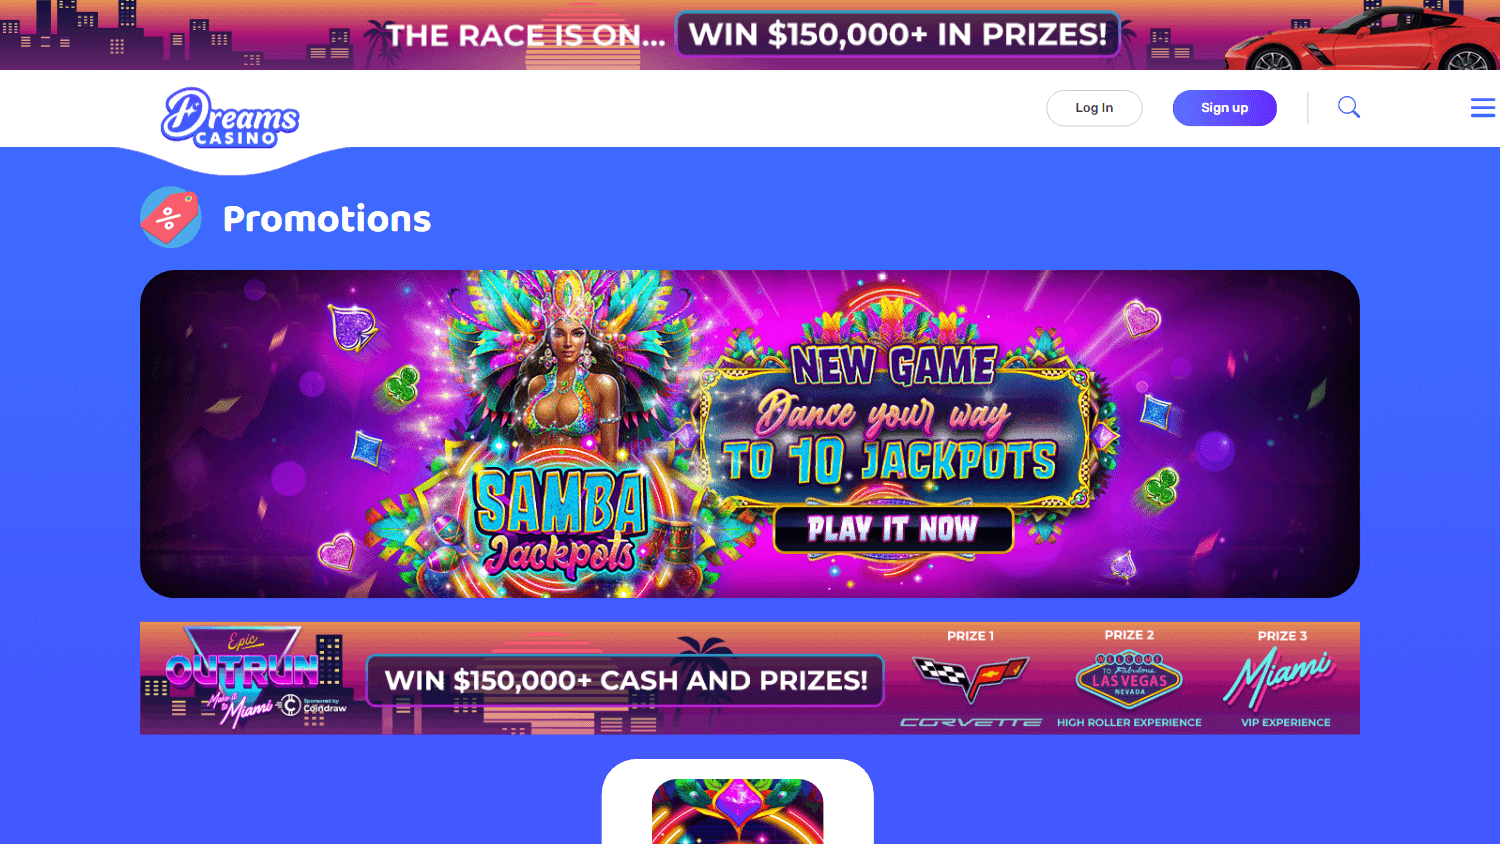 dreams_casino_promotions_desktop